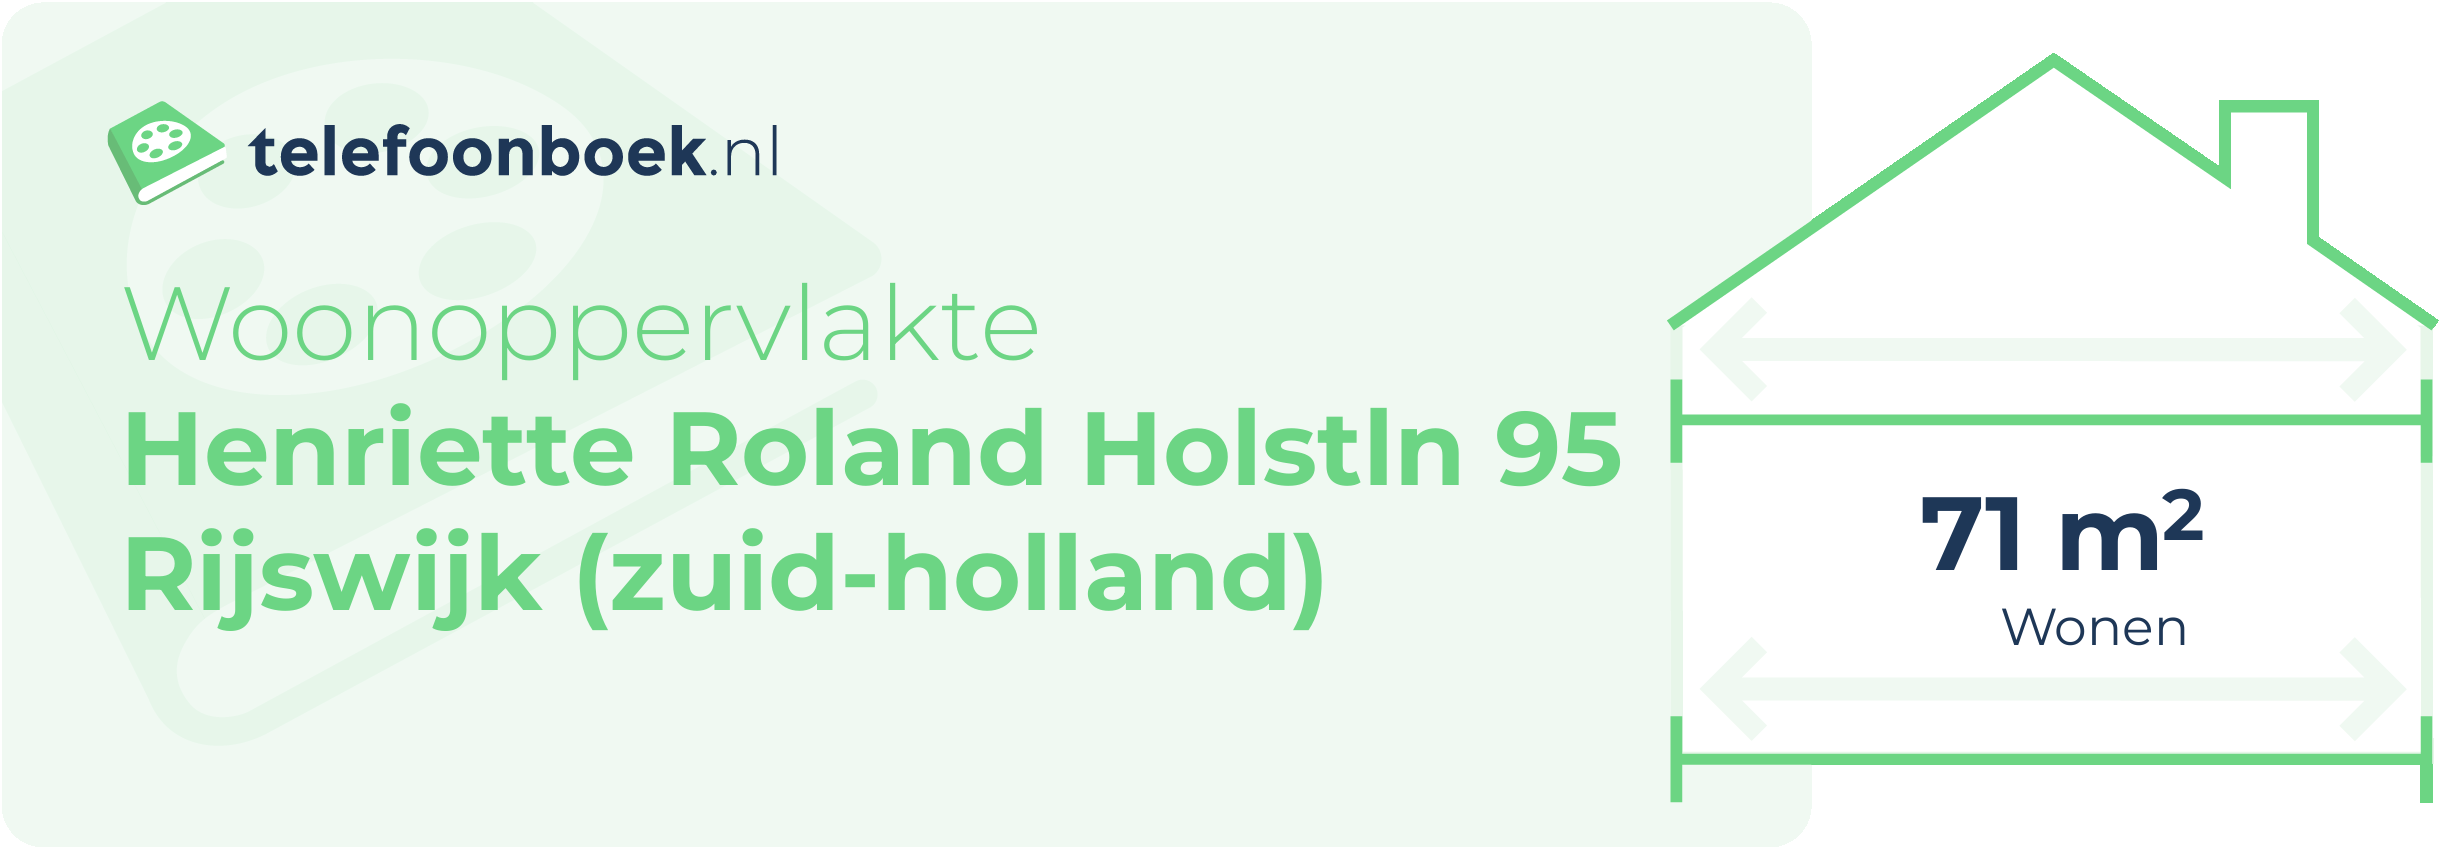 Woonoppervlakte Henriette Roland Holstln 95 Rijswijk (Zuid-Holland)